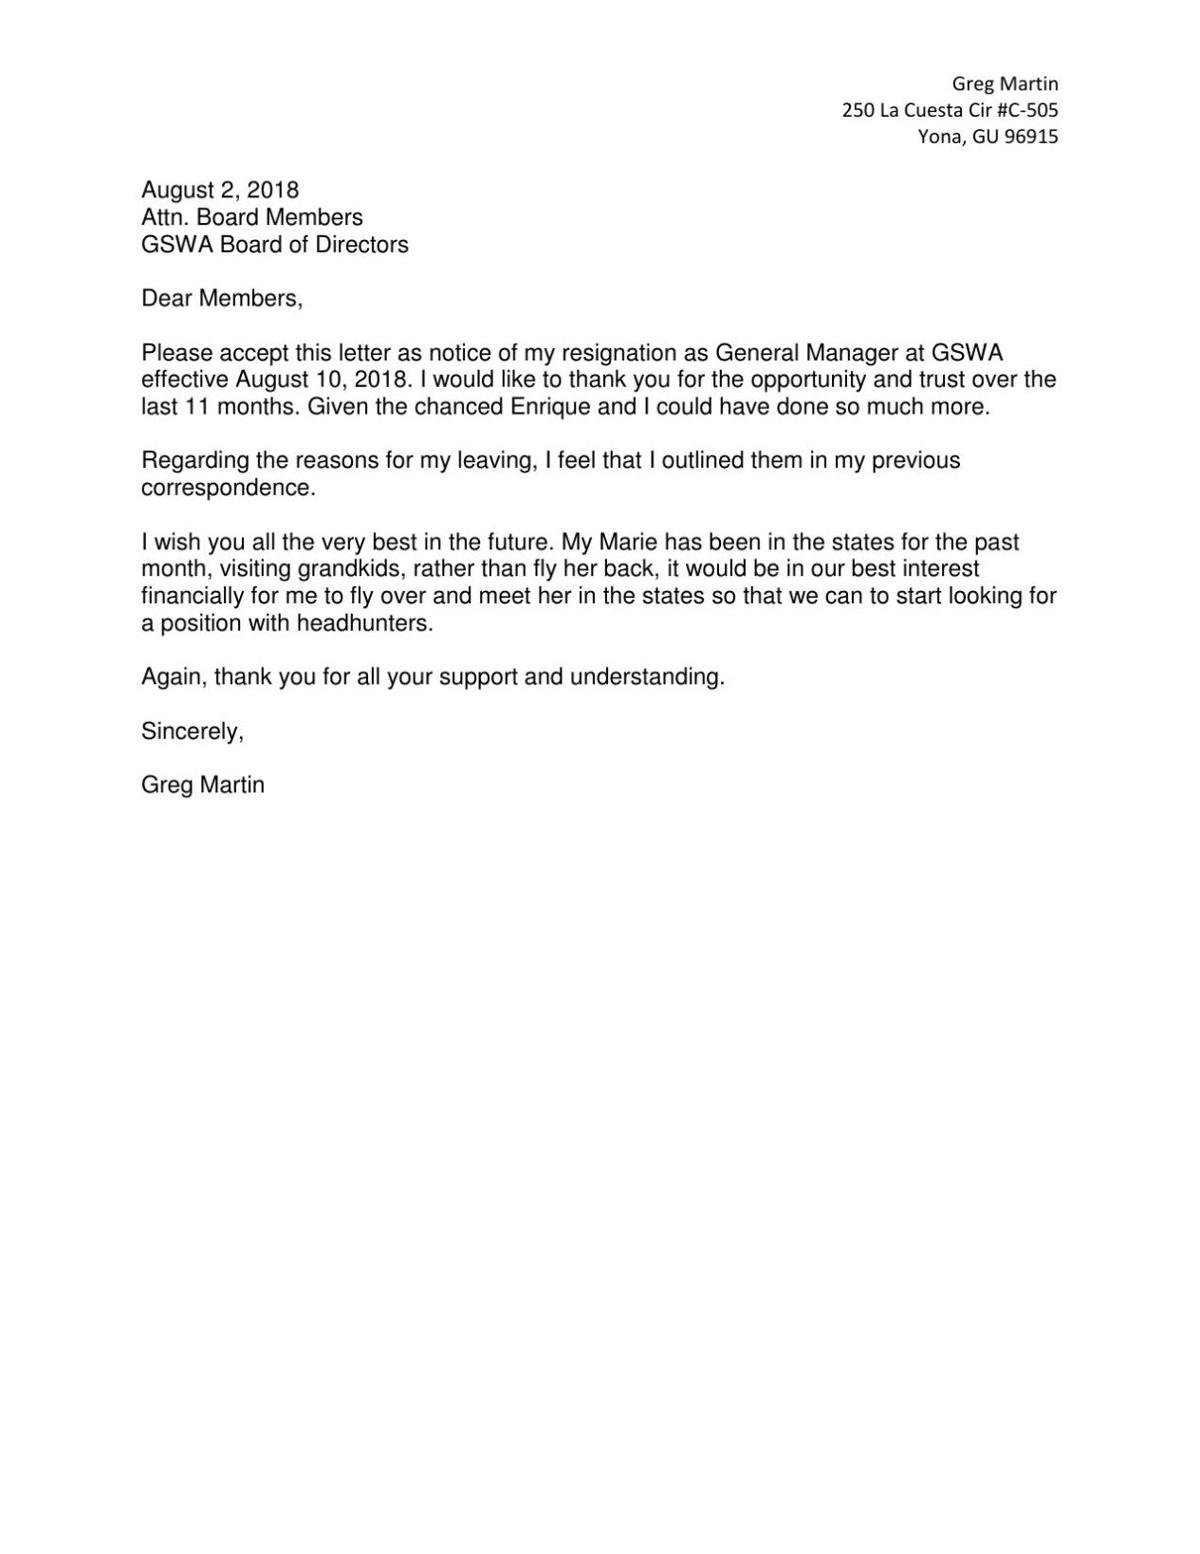 Martin Resignation Letter To Gswa Postguam Com